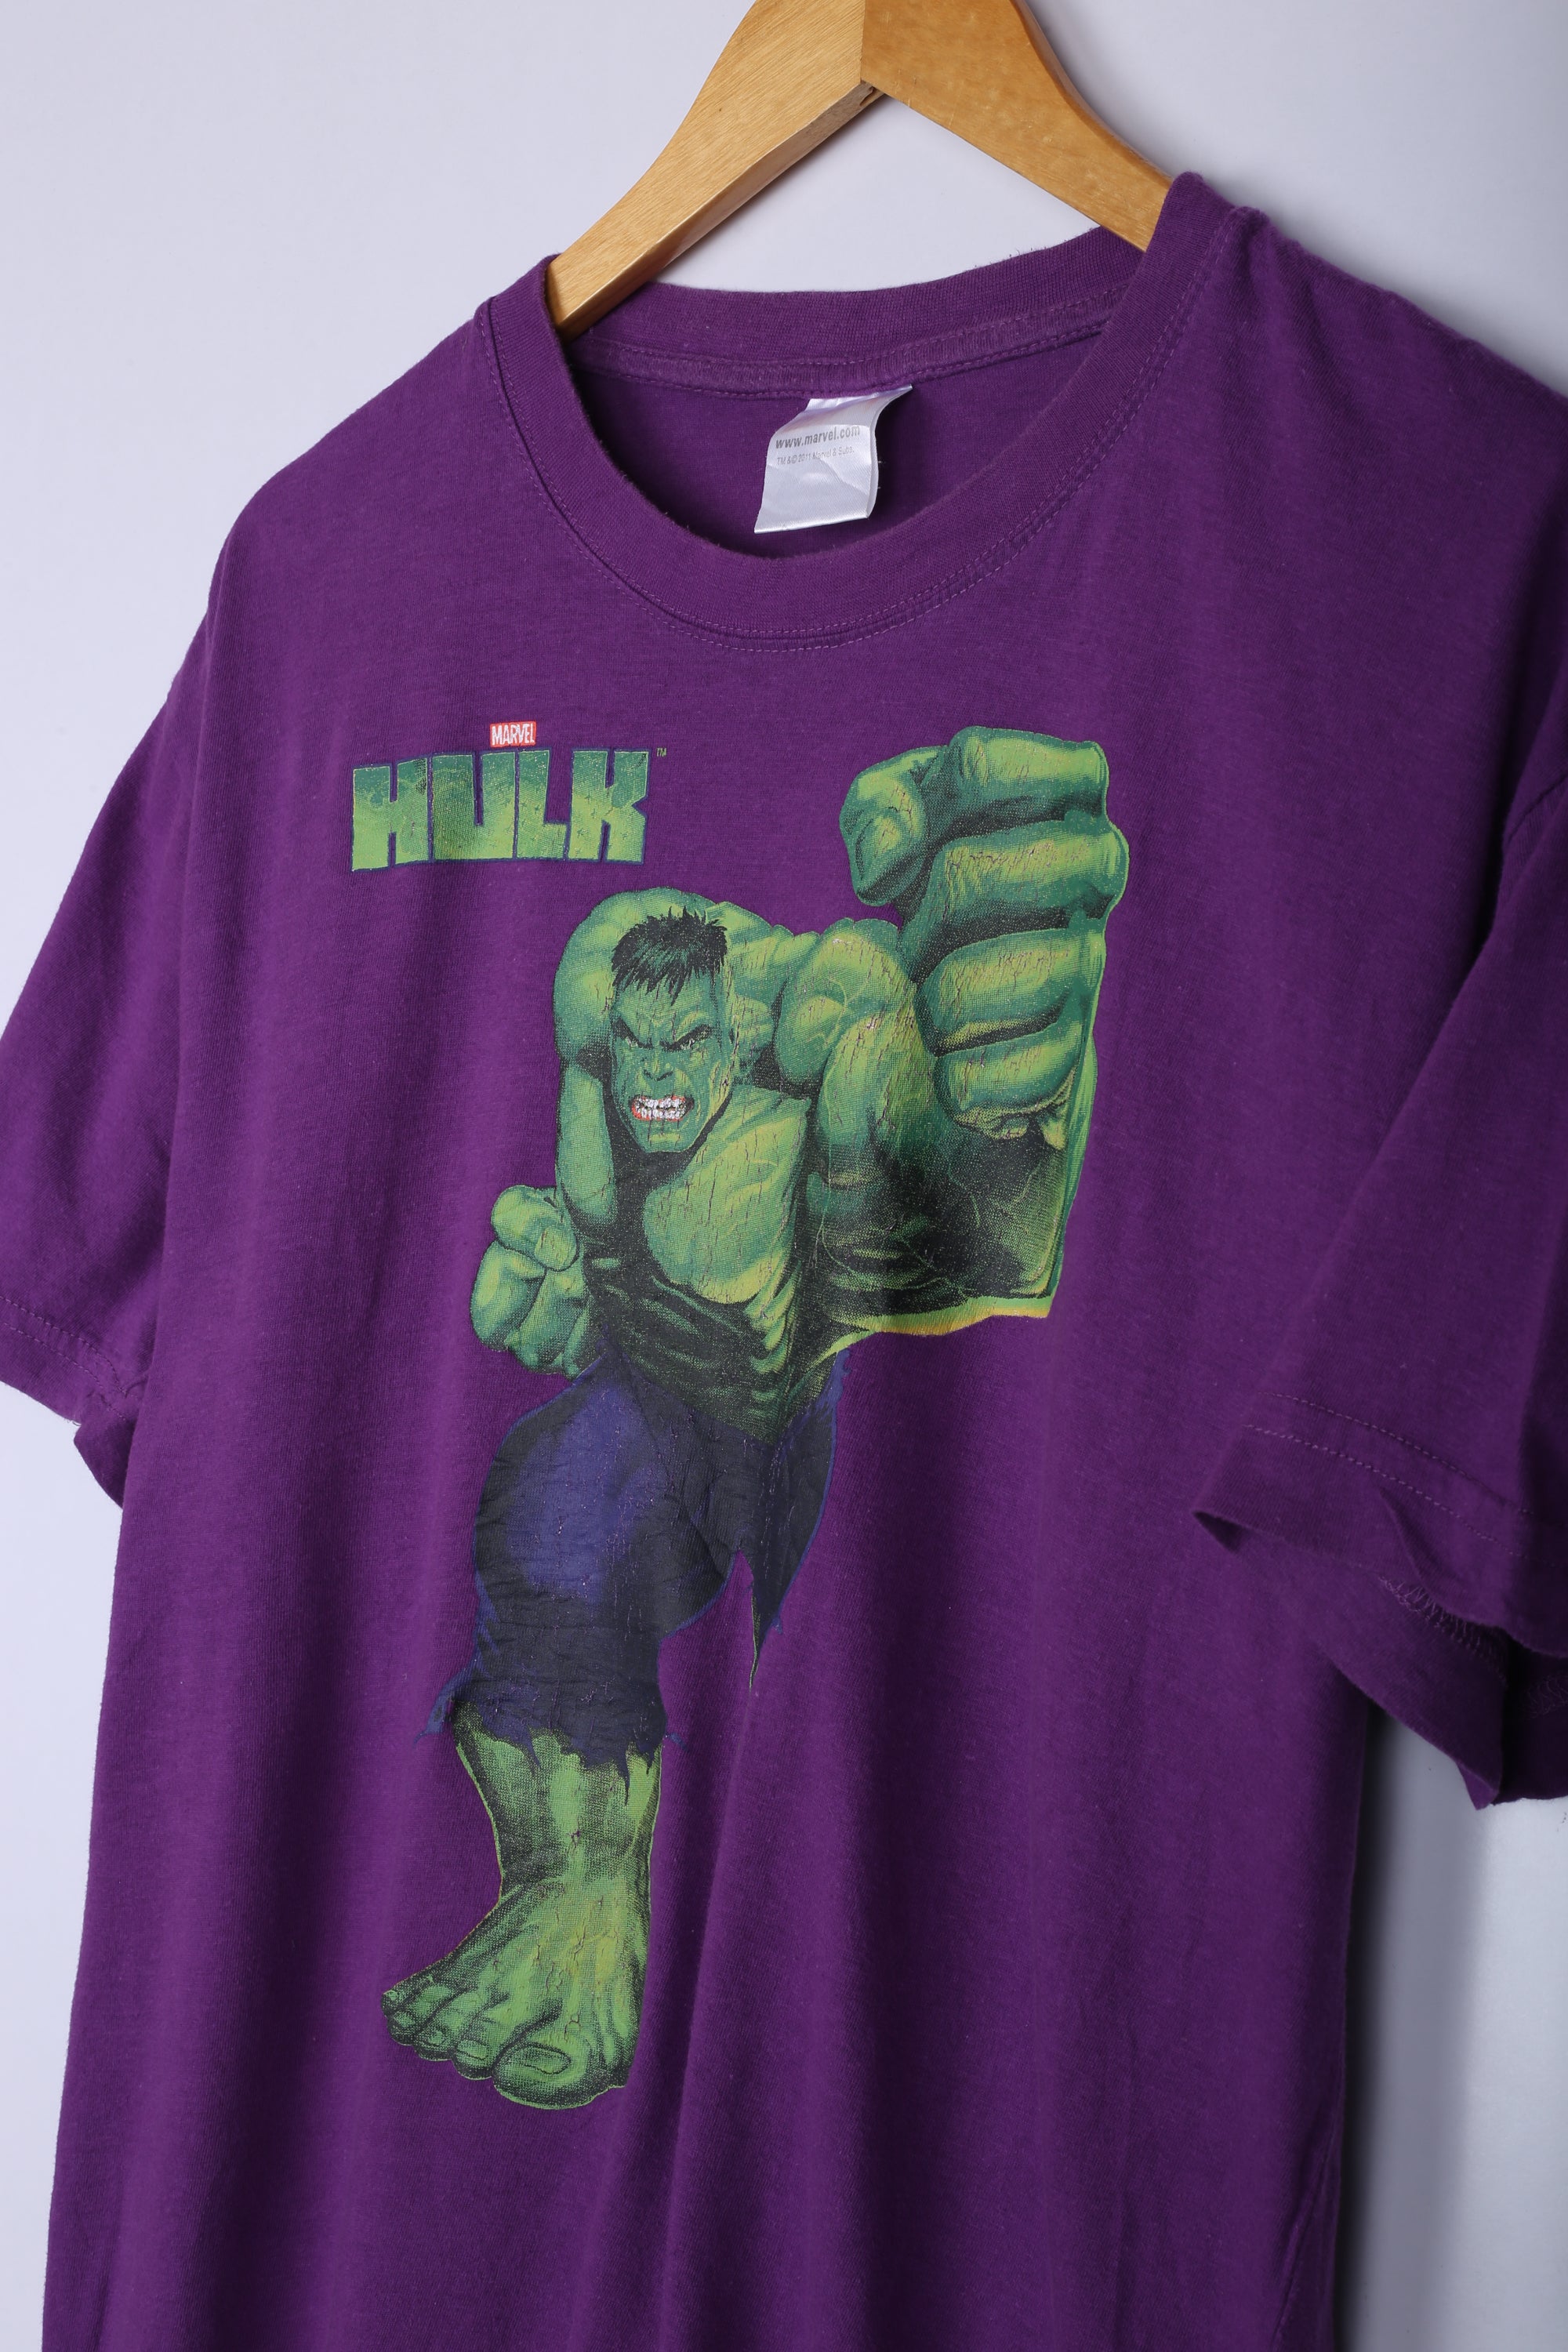 Vintage Marvel The Hulk Graphic Tee Purple